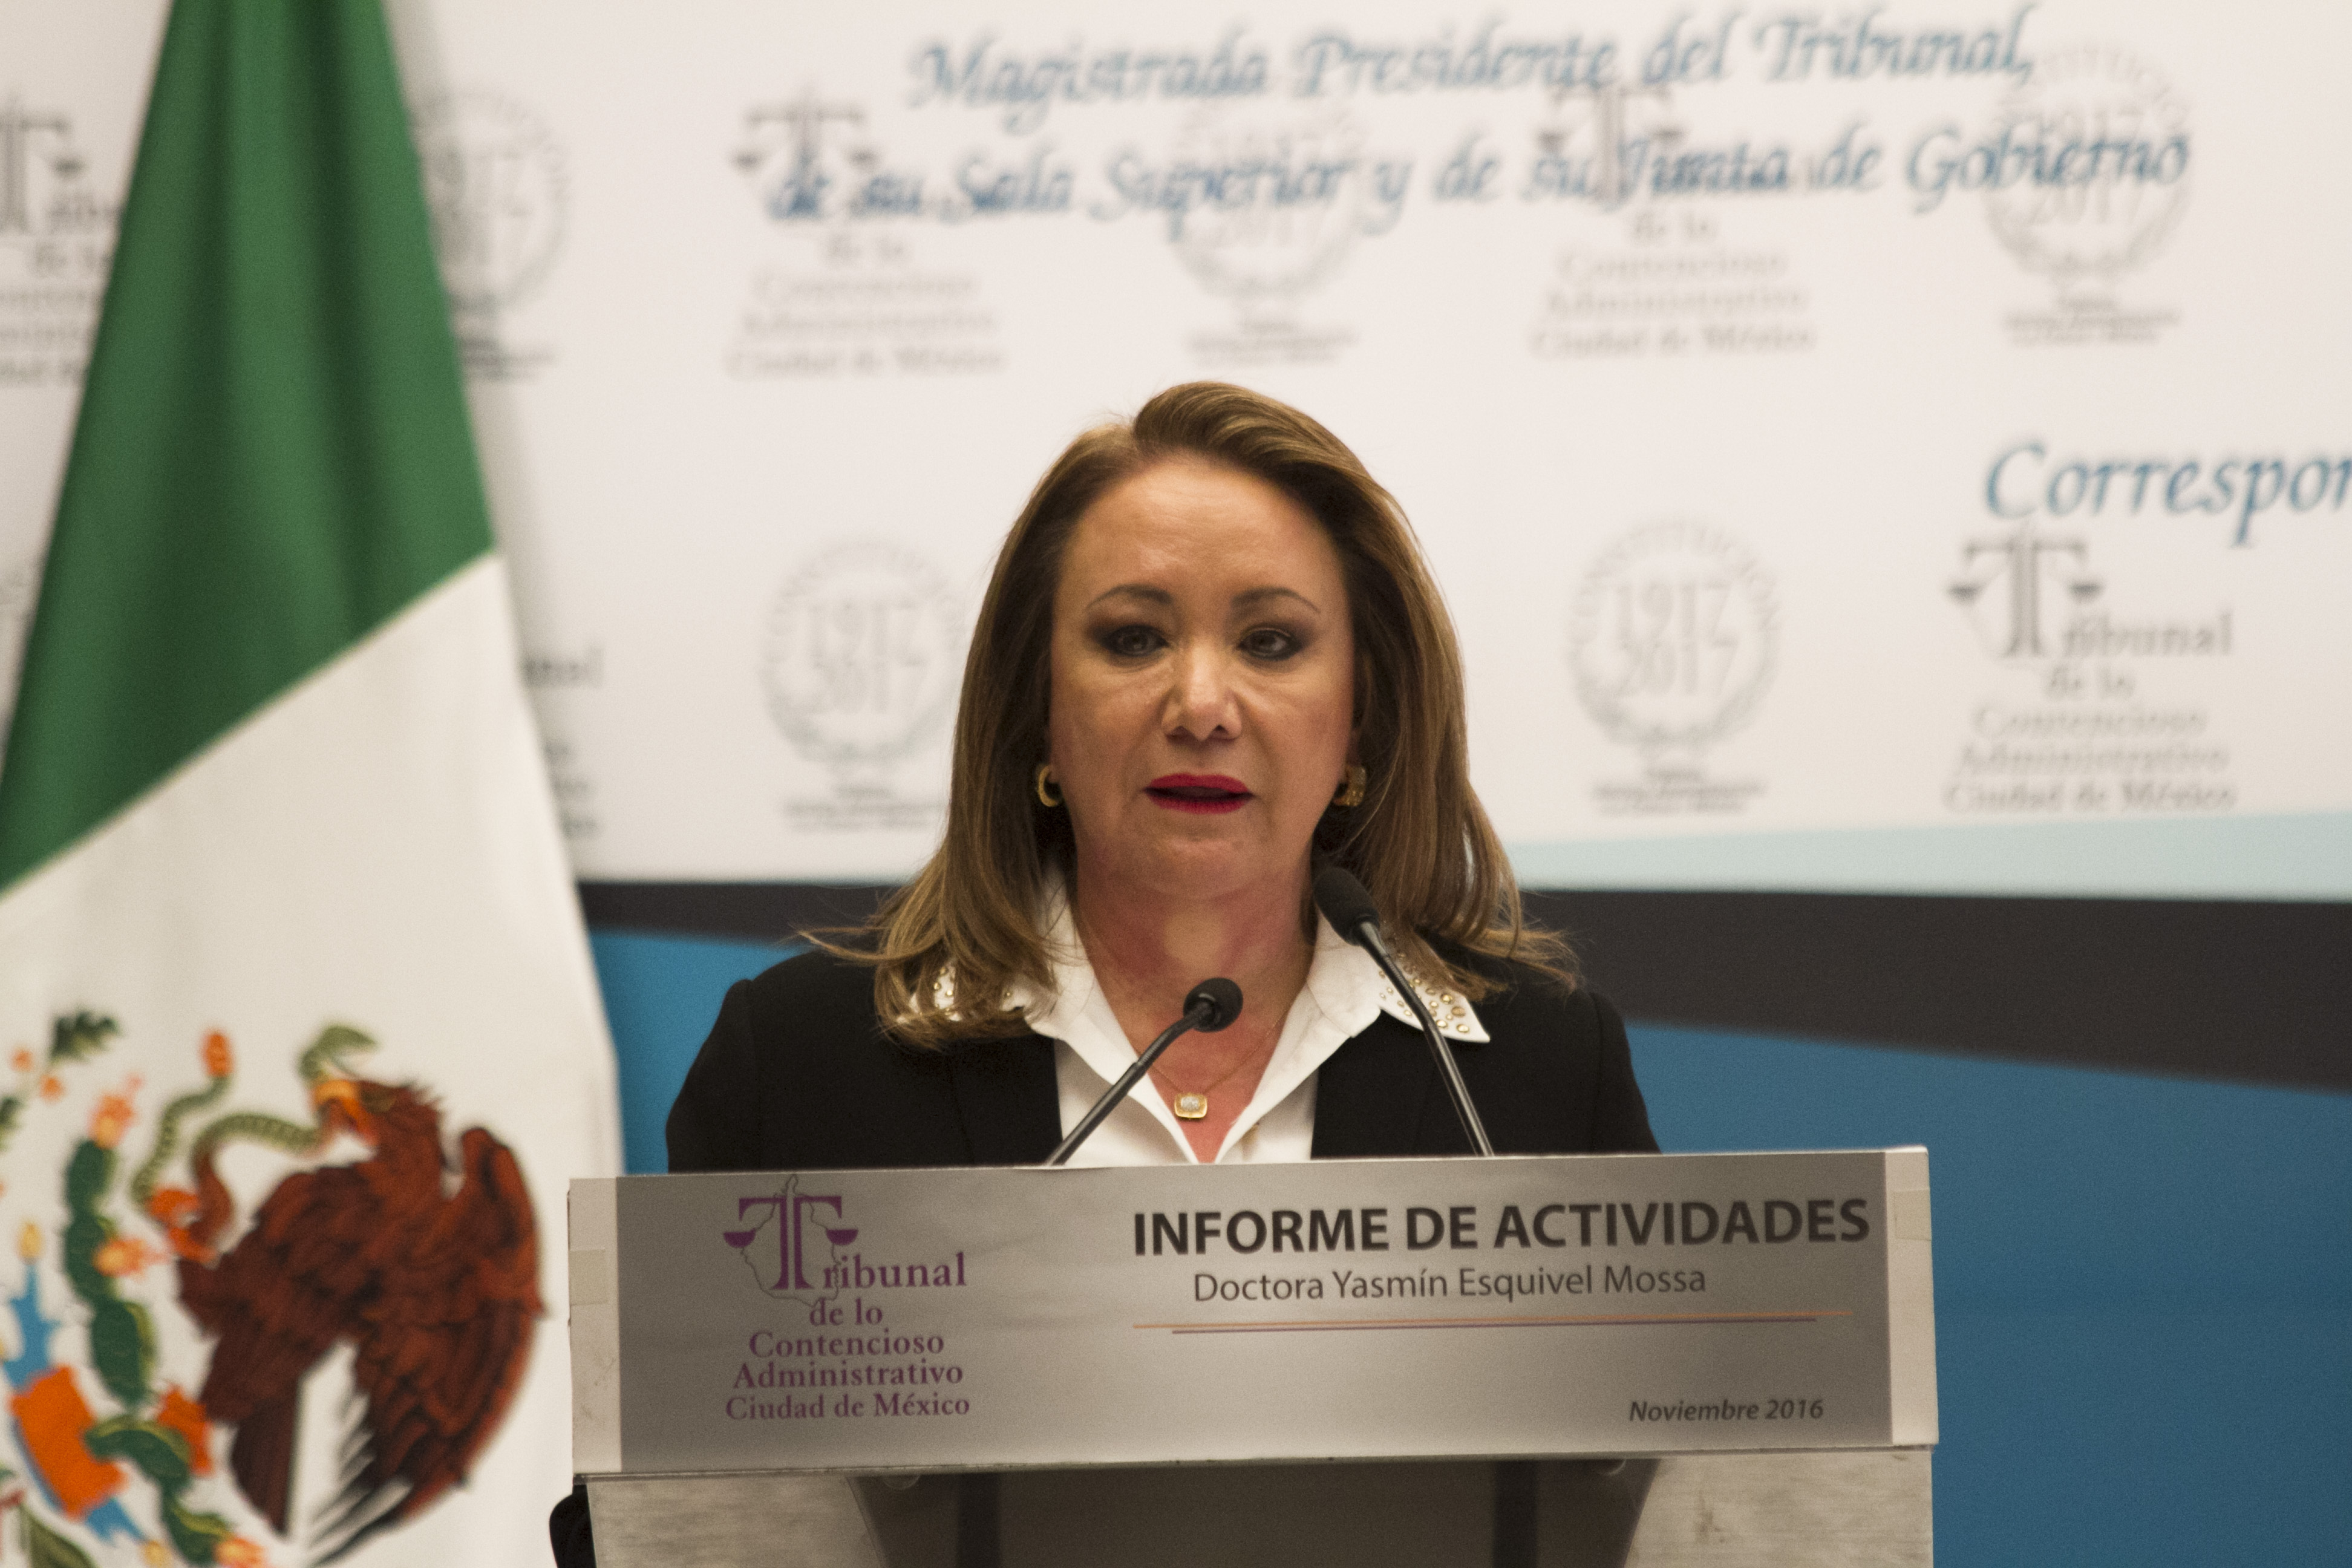 Yasmín Esquivel Mossa, magistrada presidenta del Tribunal de los Contencioso Administrativo Ciudad de México, presentó su informe de labores en el Museo de la Ciudad de México.
(FOTO: MOISÉS PABLO /CUARTOSCURO)